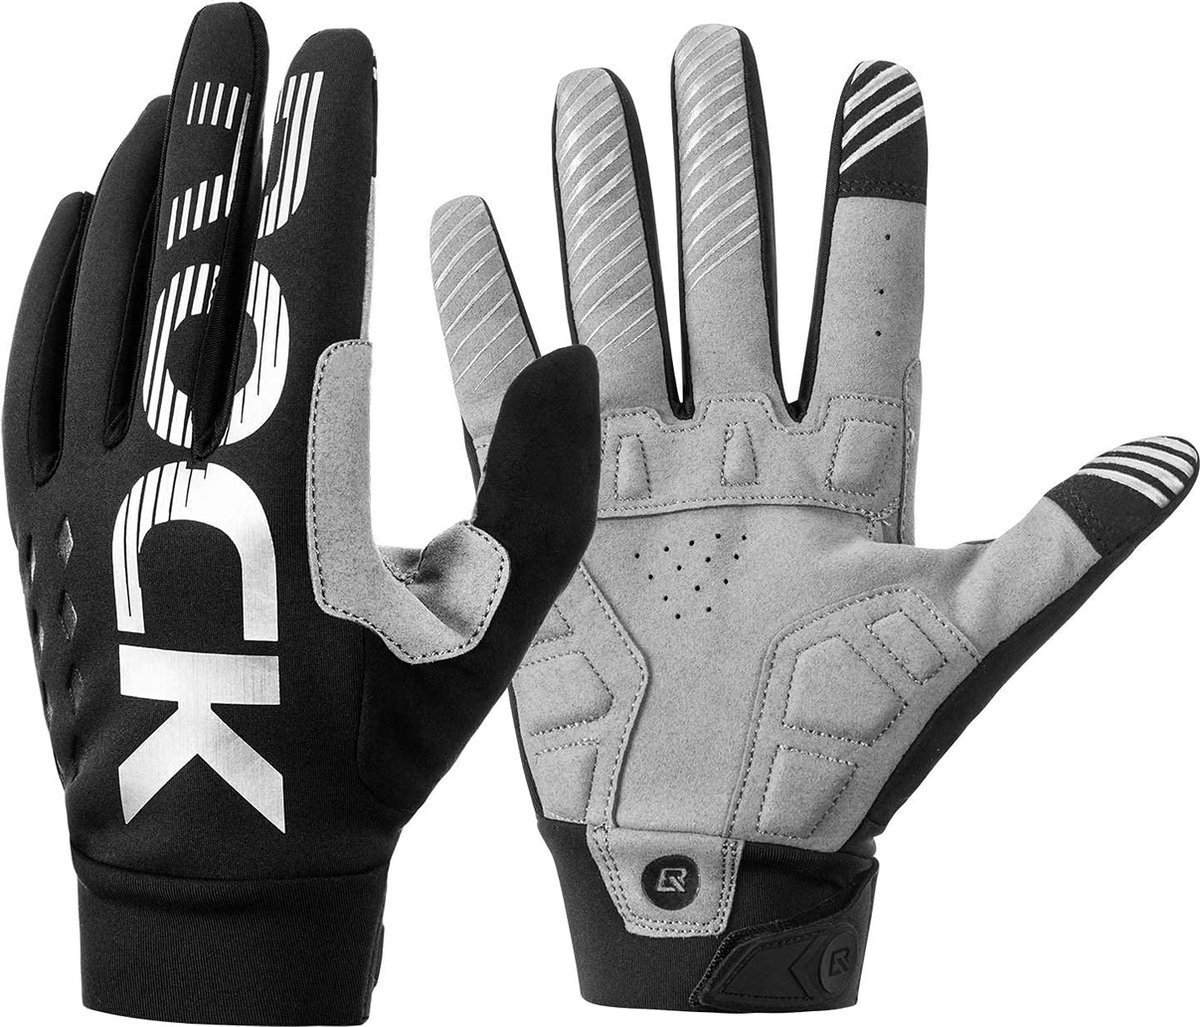 ROCKBROS - Comfortabele Winter Handschoenen - Met touchscreen - Windafstotend - Touchscreen - Voor het wandelenen- Voor fietshandschoenen Grijs - Maat XXL